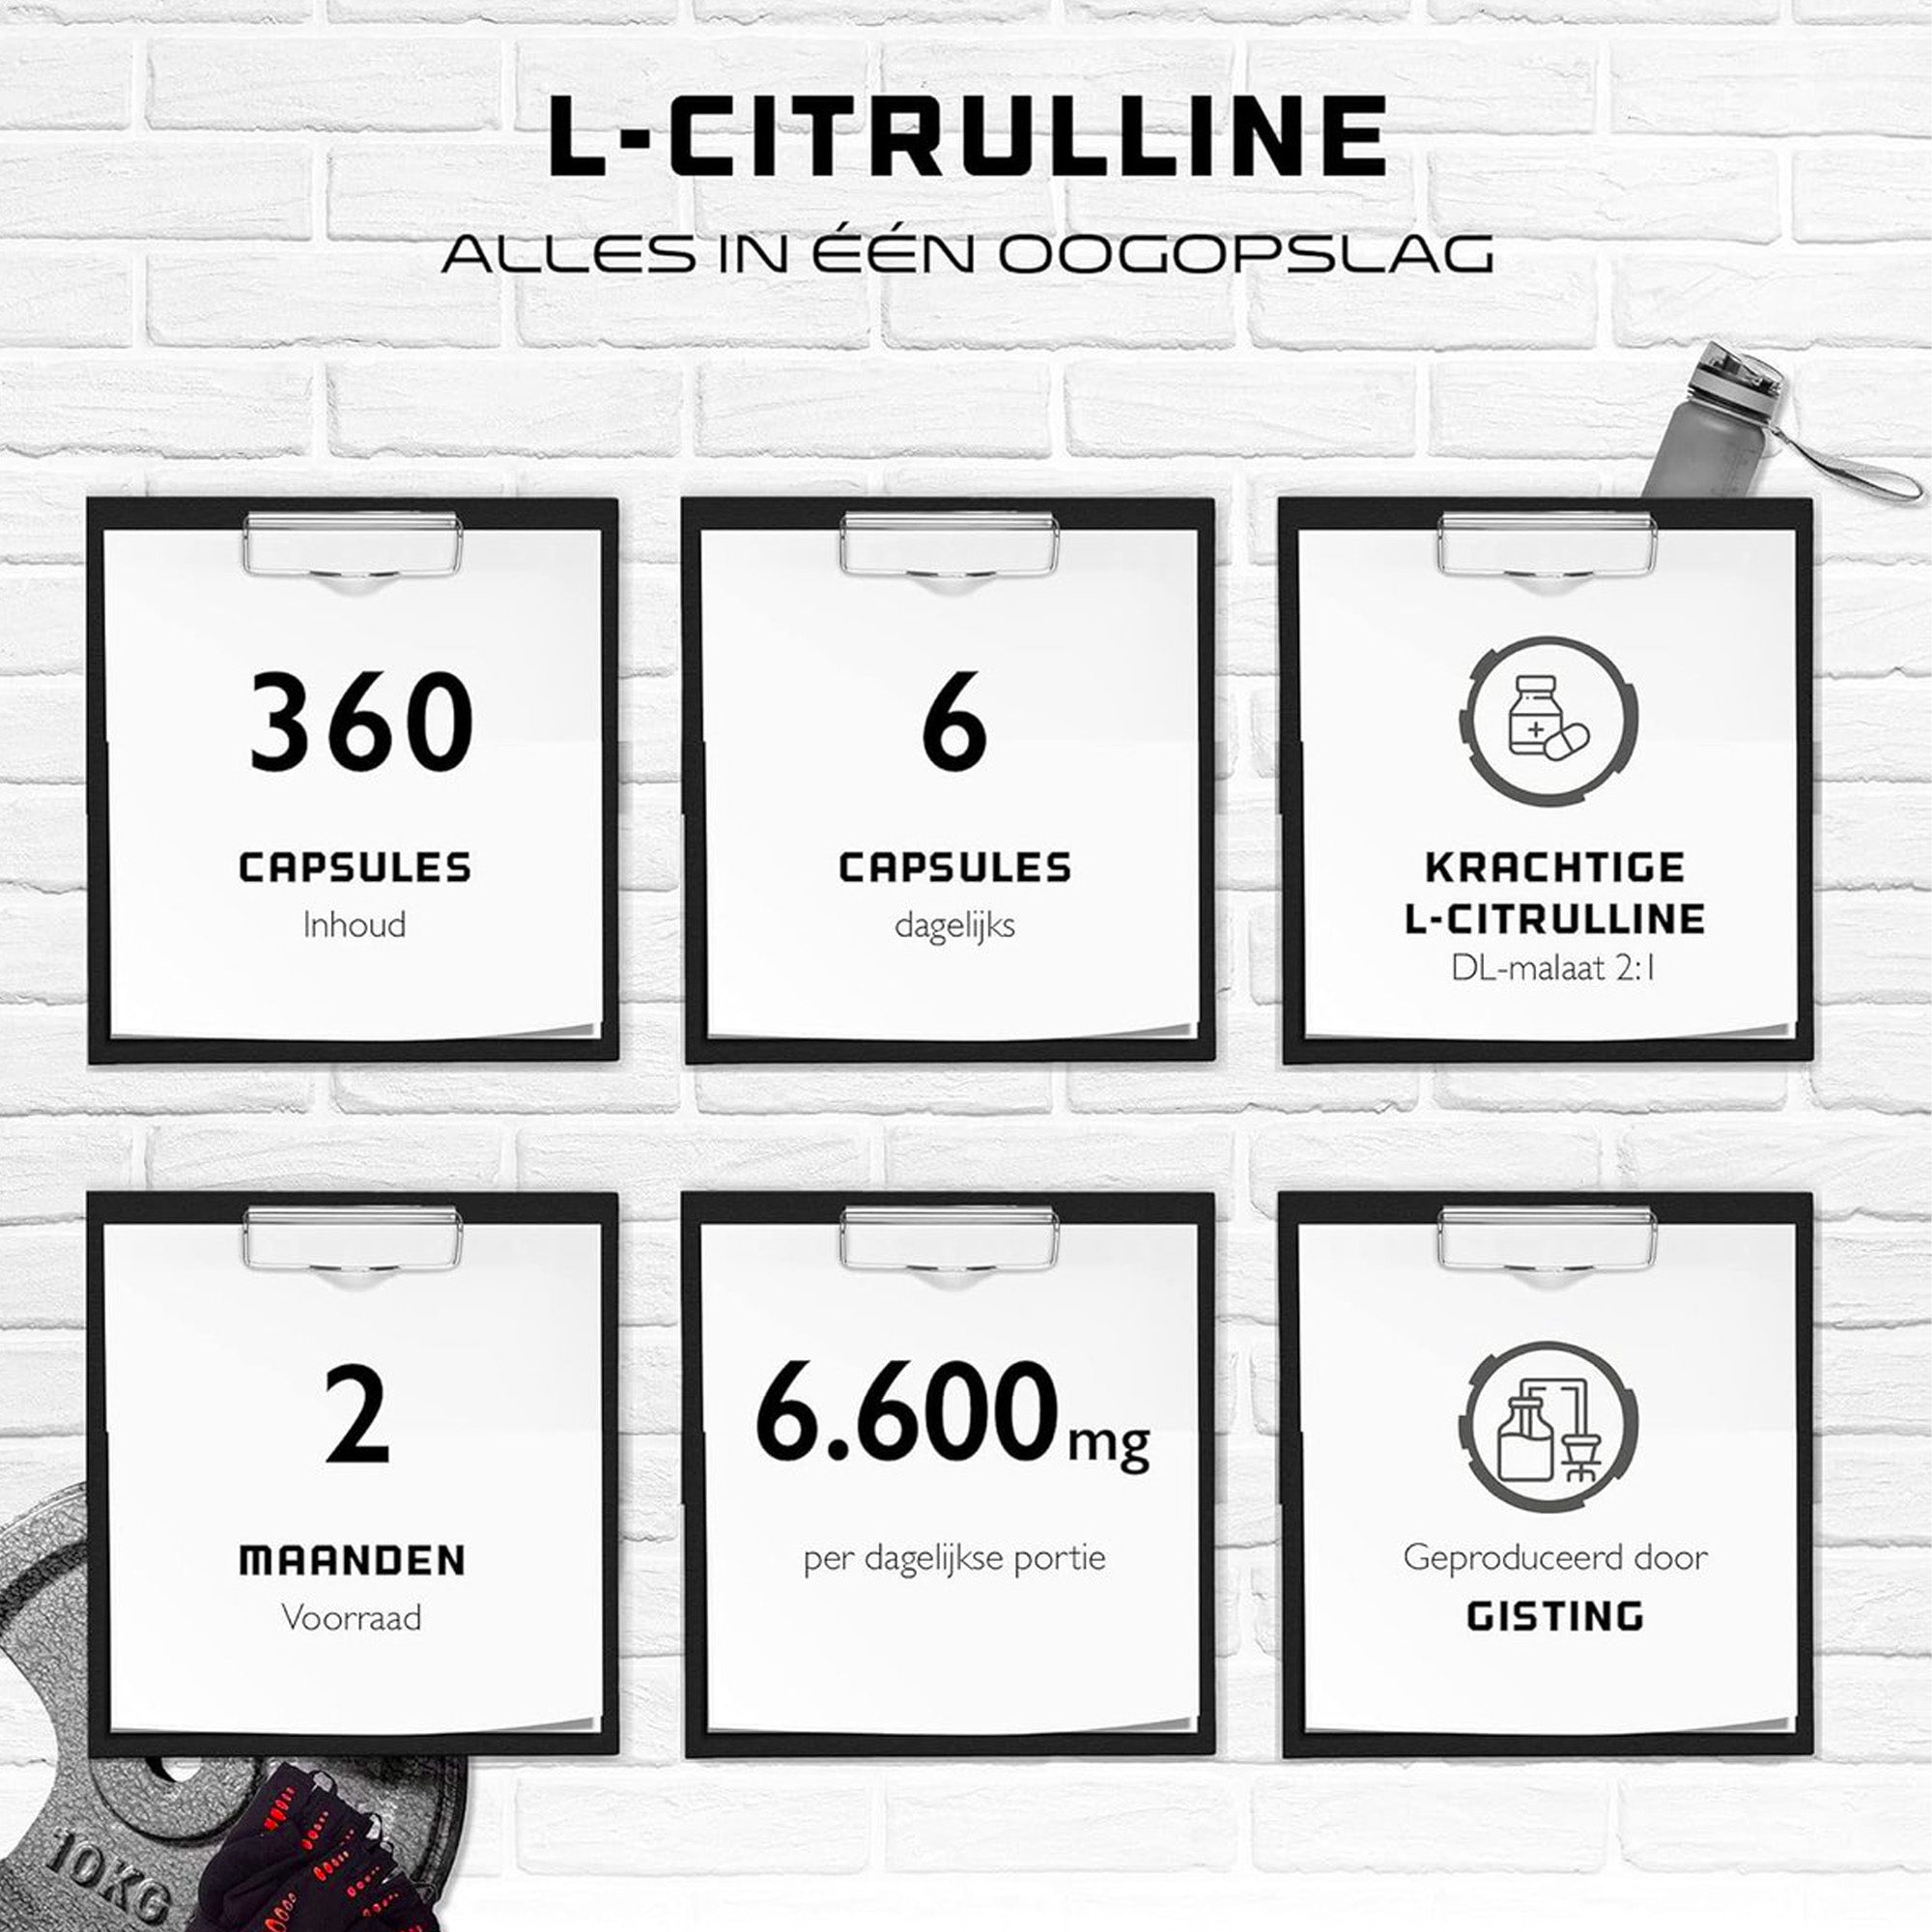 L-Citrulline 360 Capsules | Extra hoge dosering met 1100 mg per capsule | 6600 mg per portie | L-Citrulline DL-Malaat 2:1 uit plantaardige fermentatie | Zonder ongewenste toevoegingen